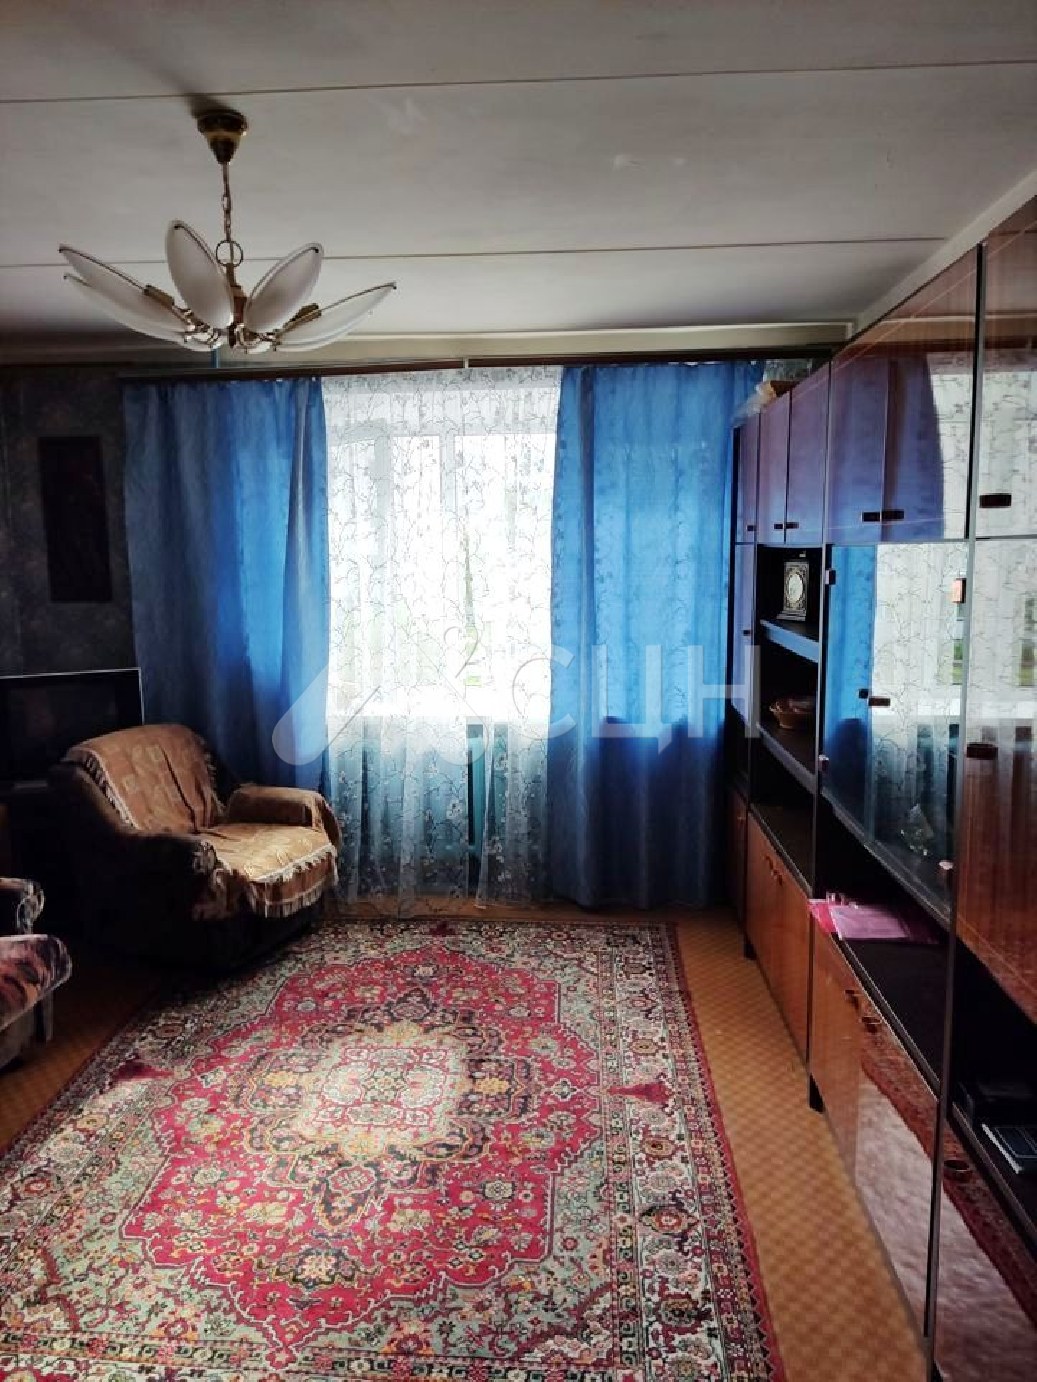 недвижимость саров
: Г. Саров, улица Некрасова, 11, 3-комн квартира, этаж 2 из 9, продажа.